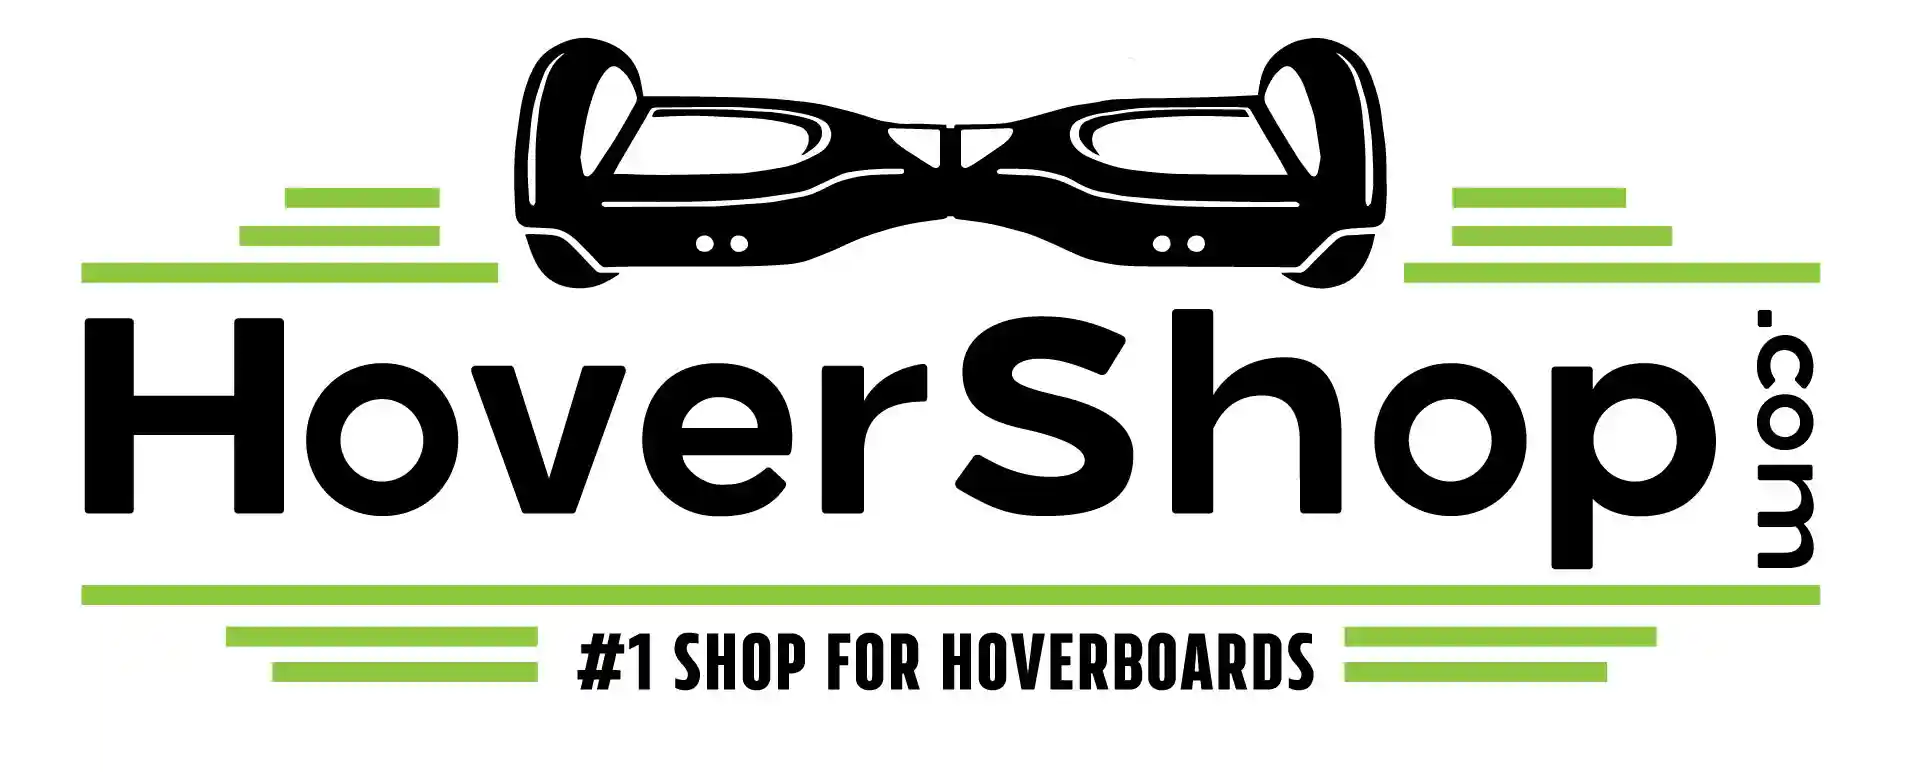 hovershop.com